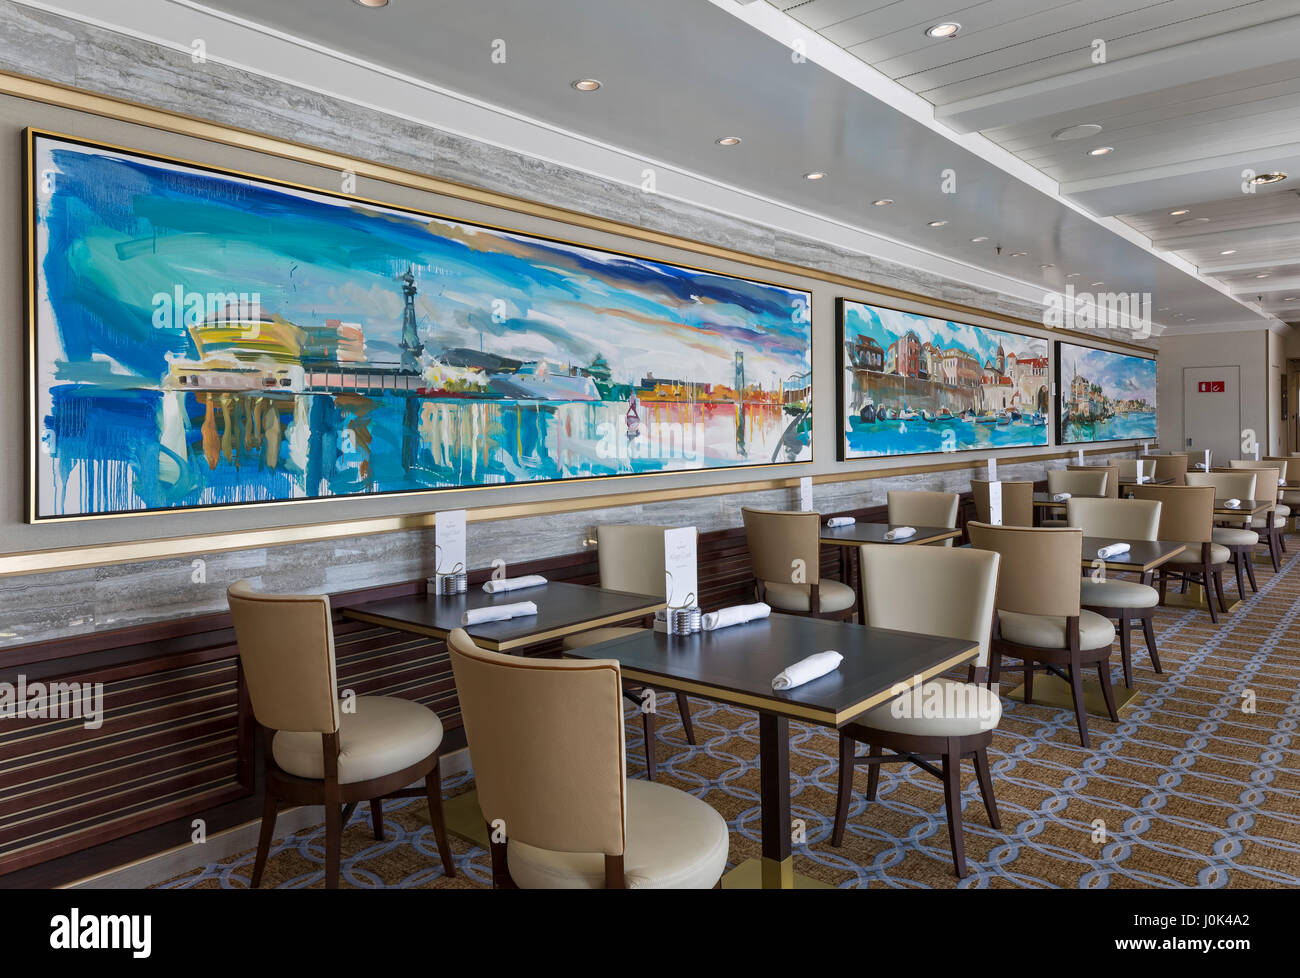 Restaurant mit Artwork - Interieur von der Queen Mary 2. Cunard Queen Mary 2 Innenräume, Southampton, Vereinigtes Königreich. Architekt: SMC Design, 2016. Stockfoto